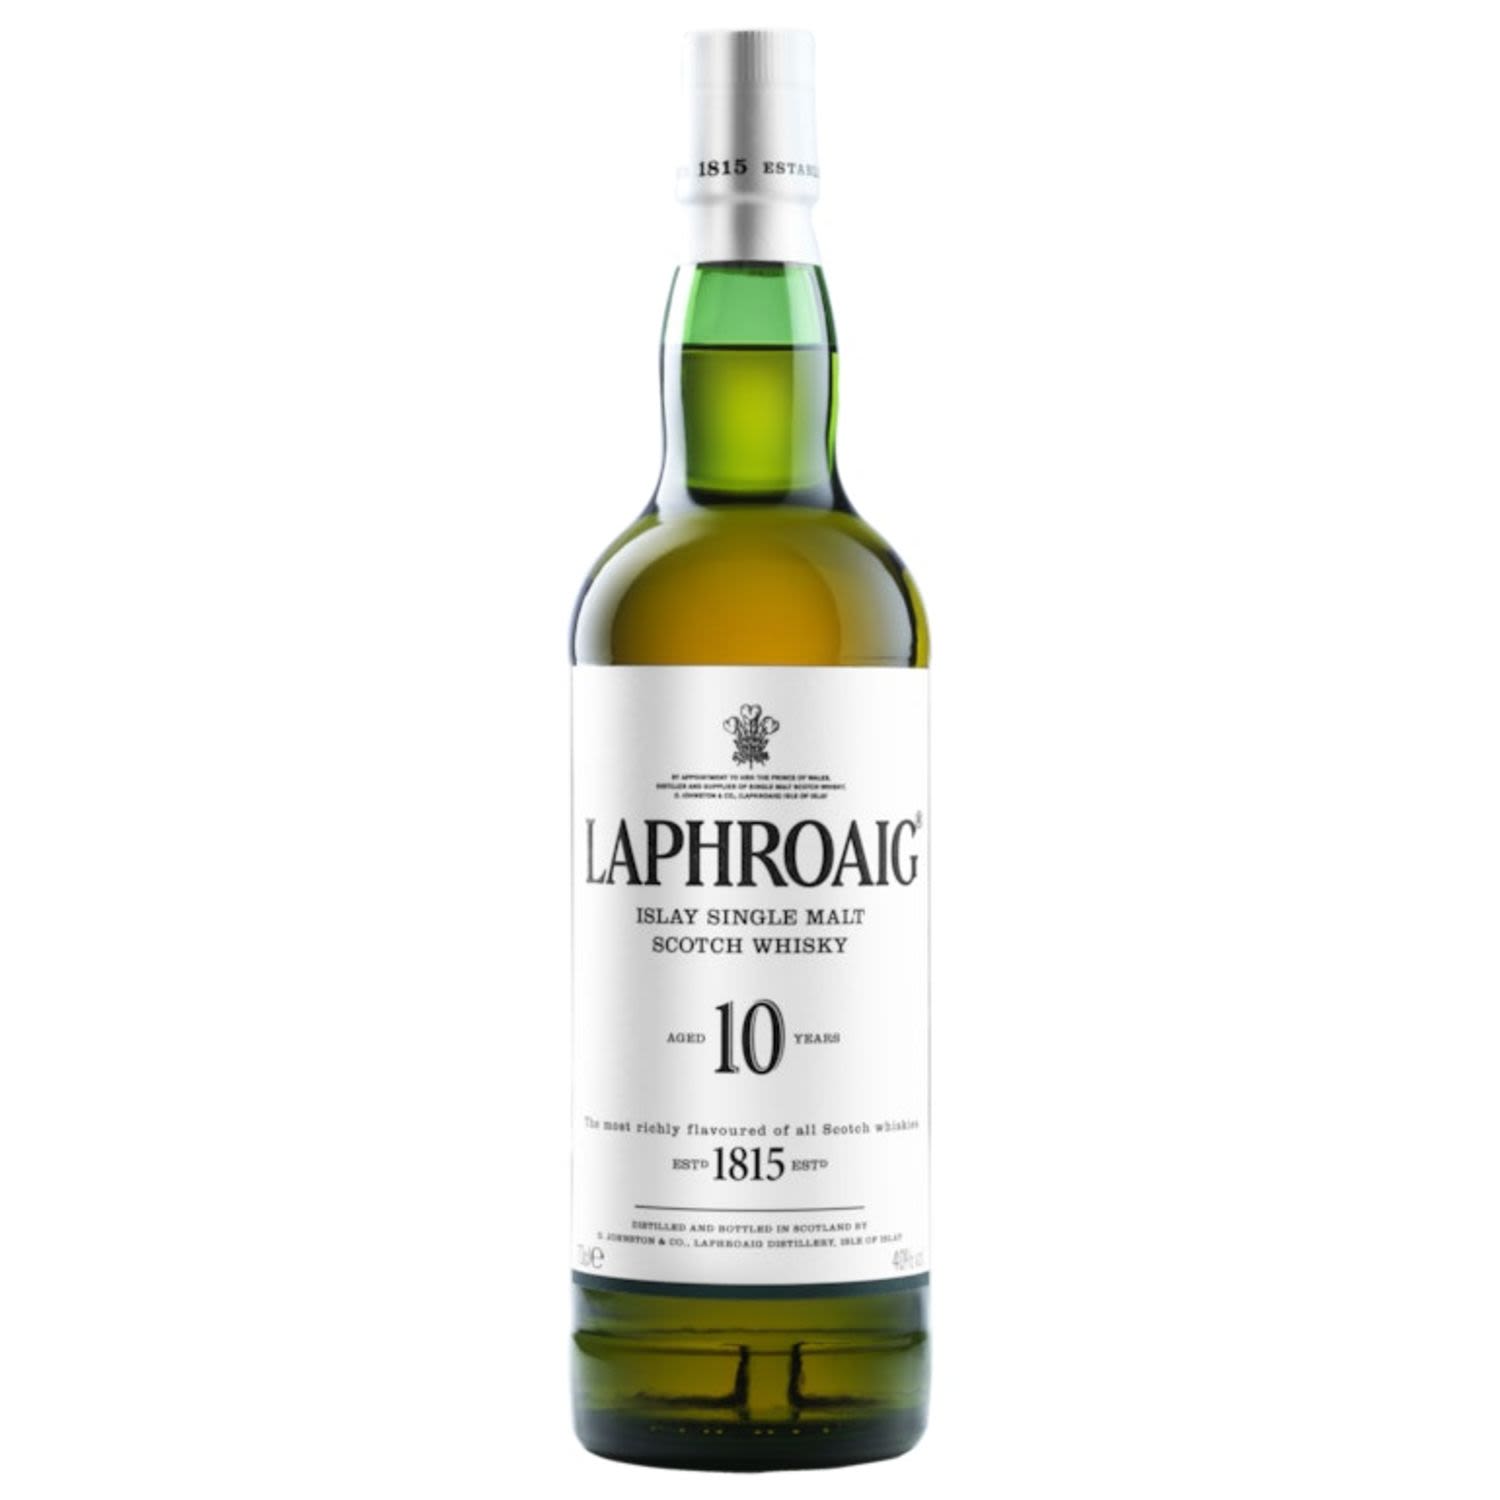 Laphroaig 10 Year Old Single Malt Scotch Whisky 700mL Bottle